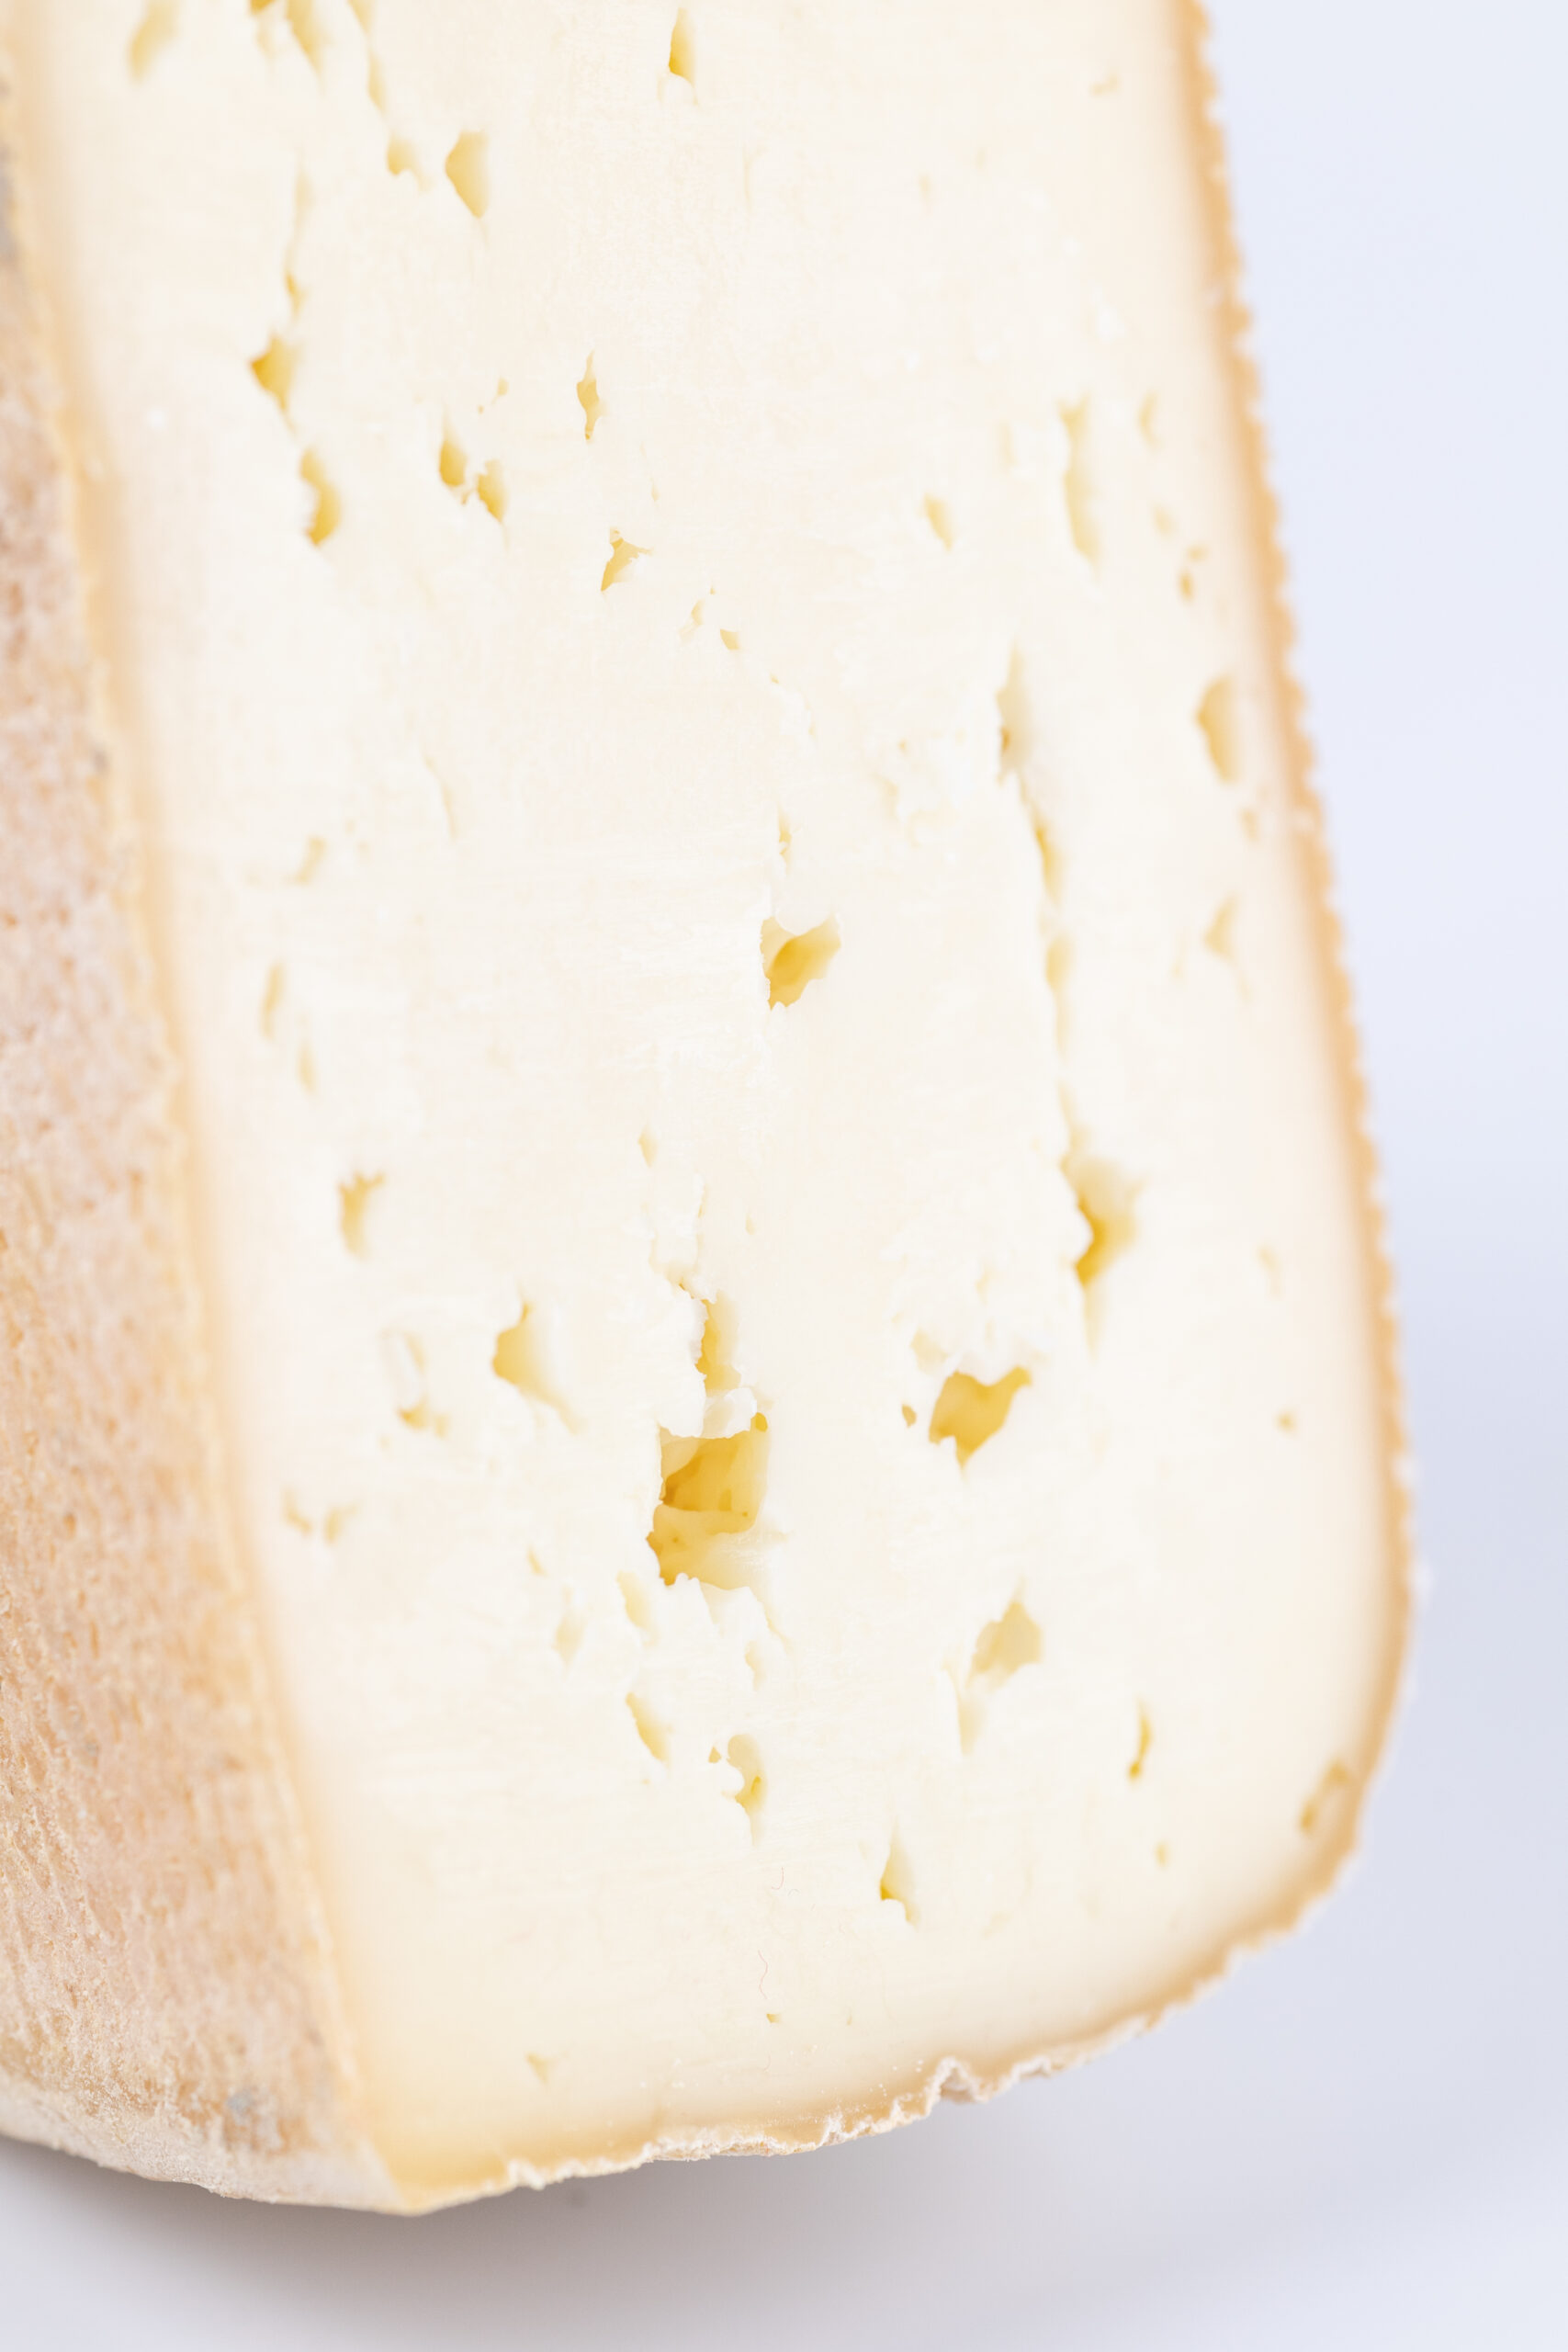 gusto-valsassina-formaggio-semigrasso-giovane-dettaglio